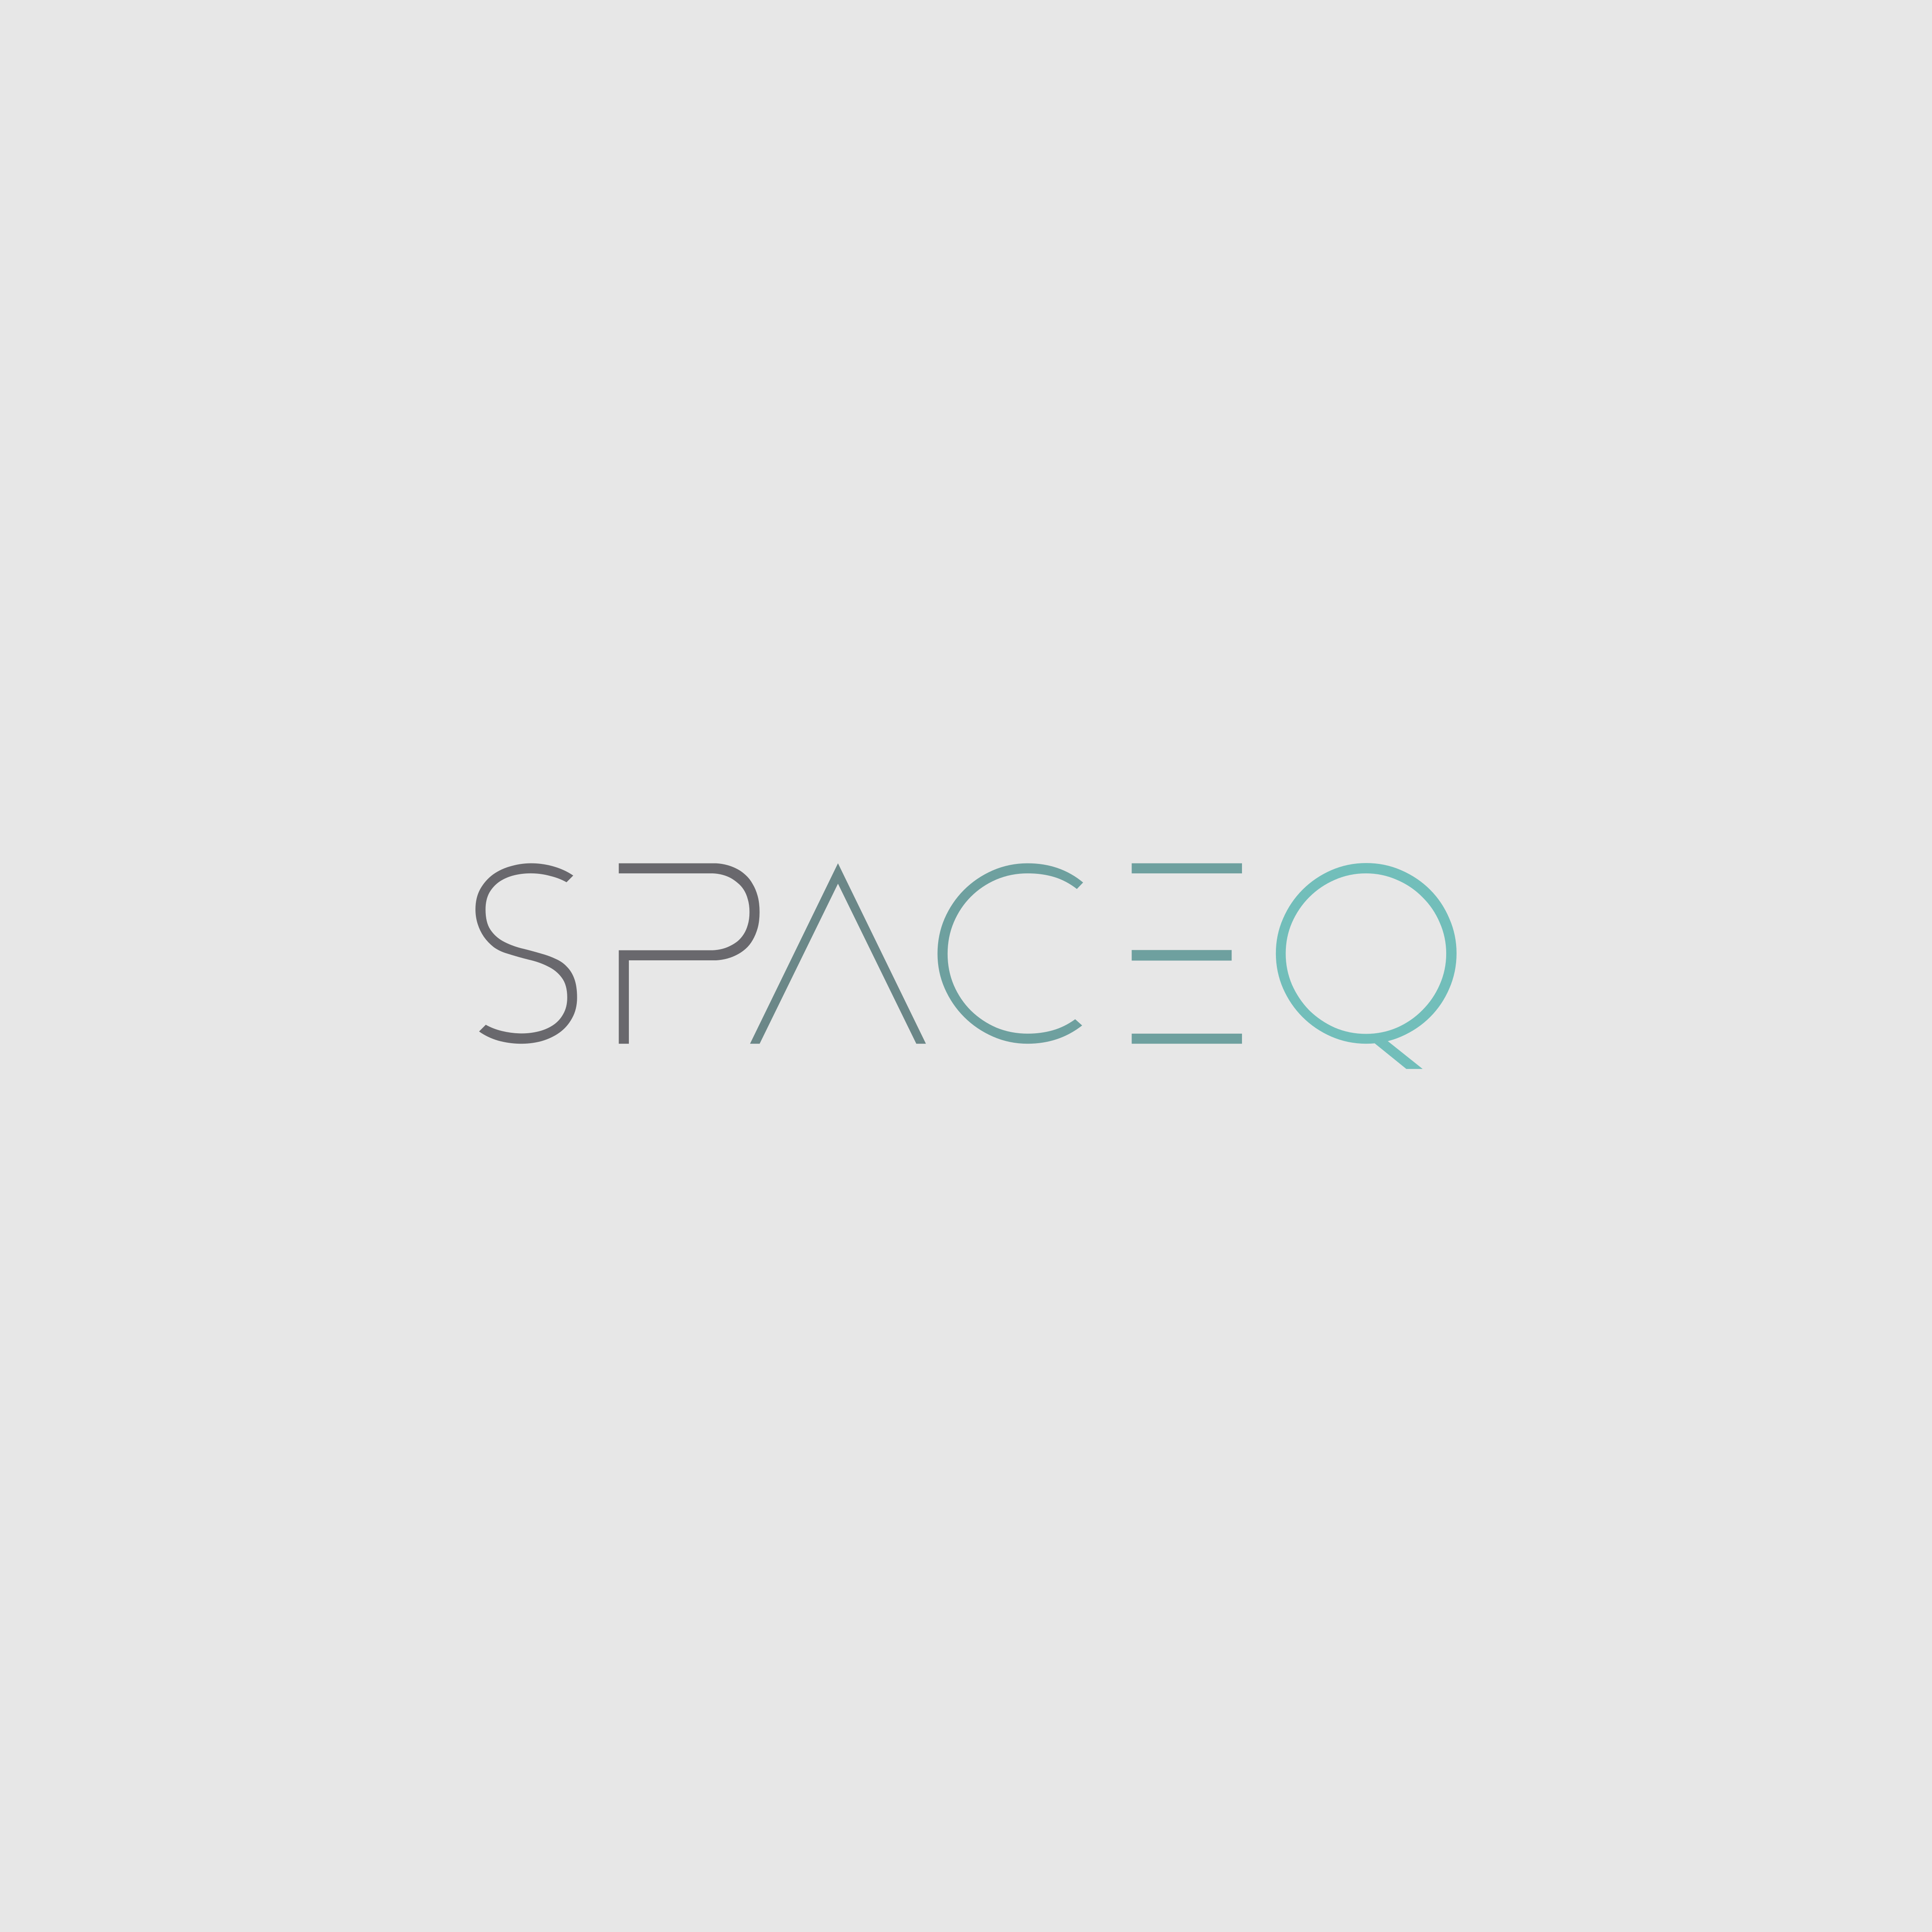 Spaceq